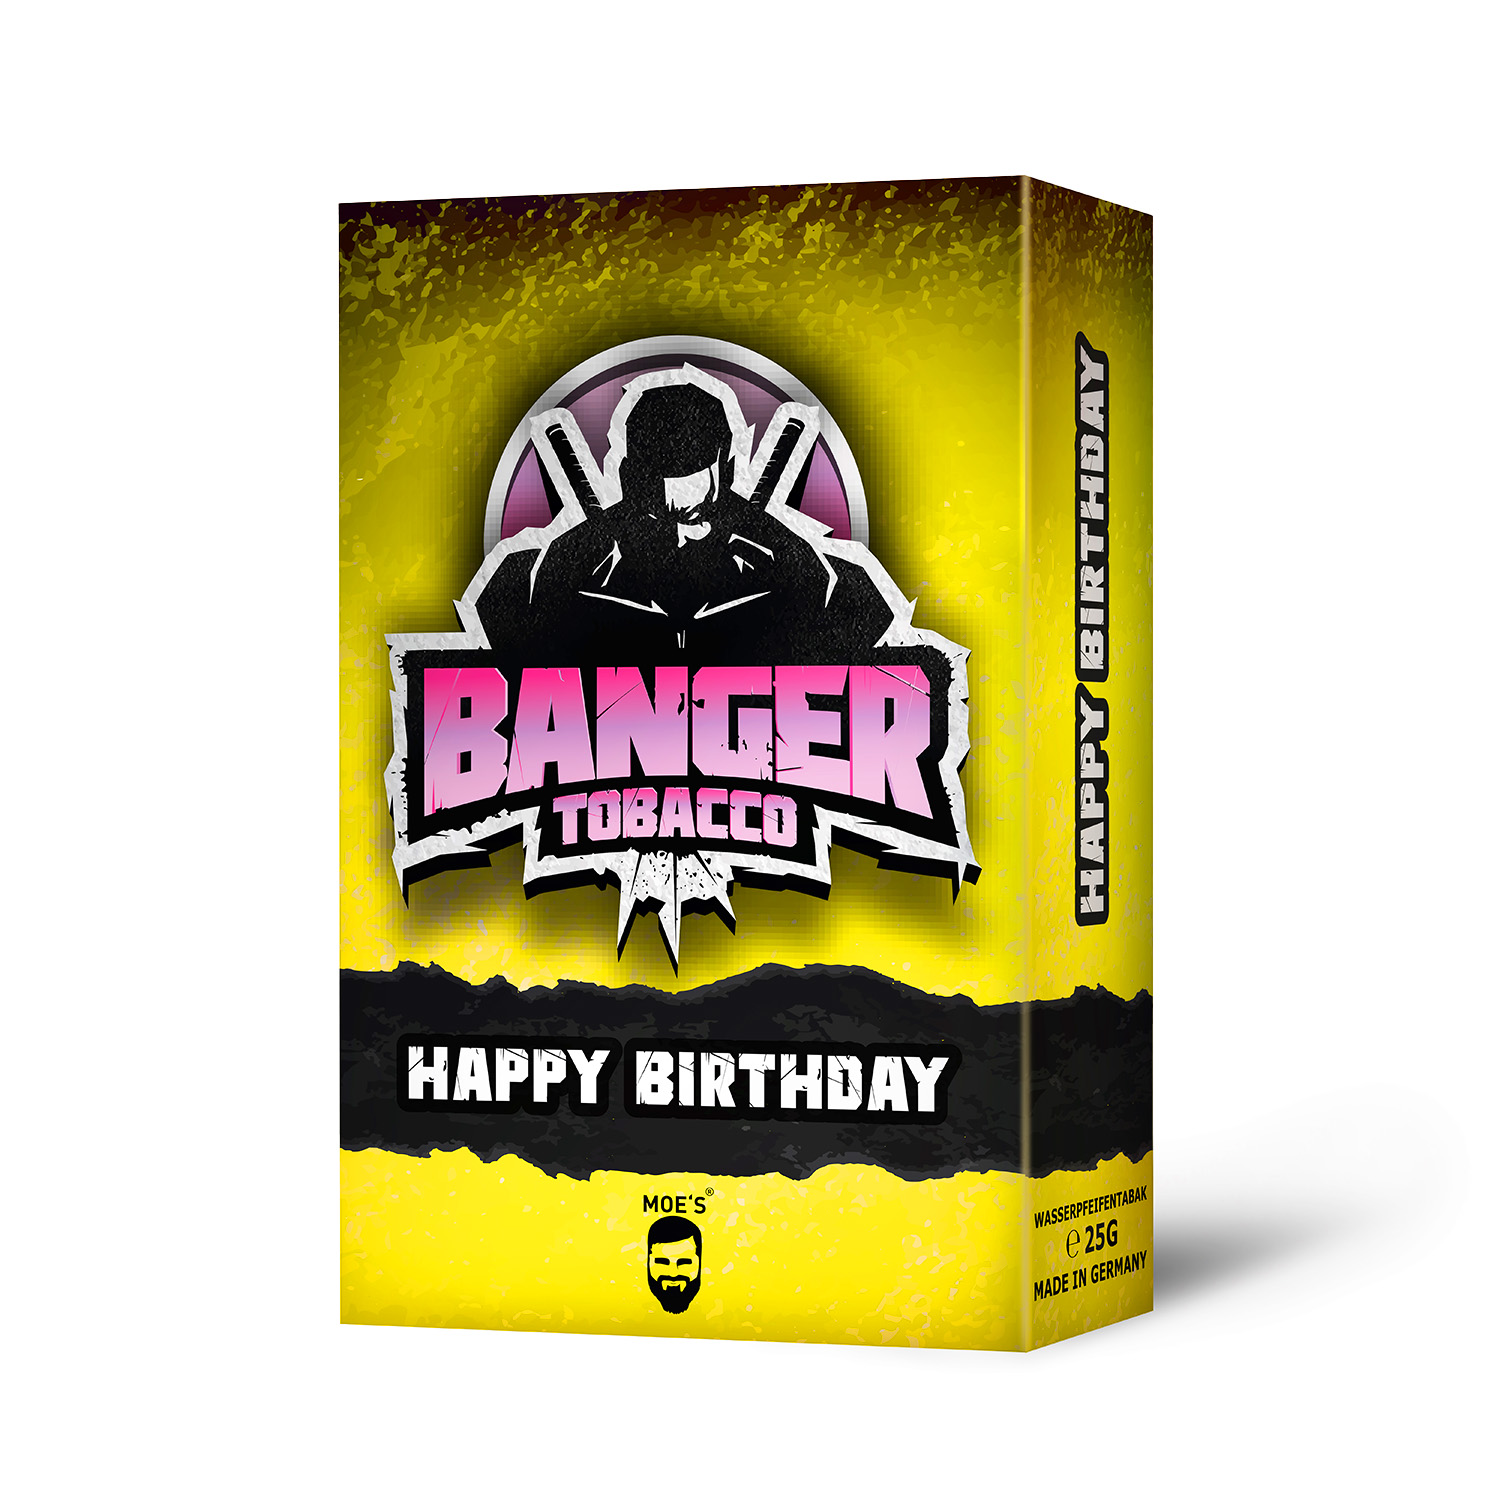 BANGER - HAPPY BIRTHDAY